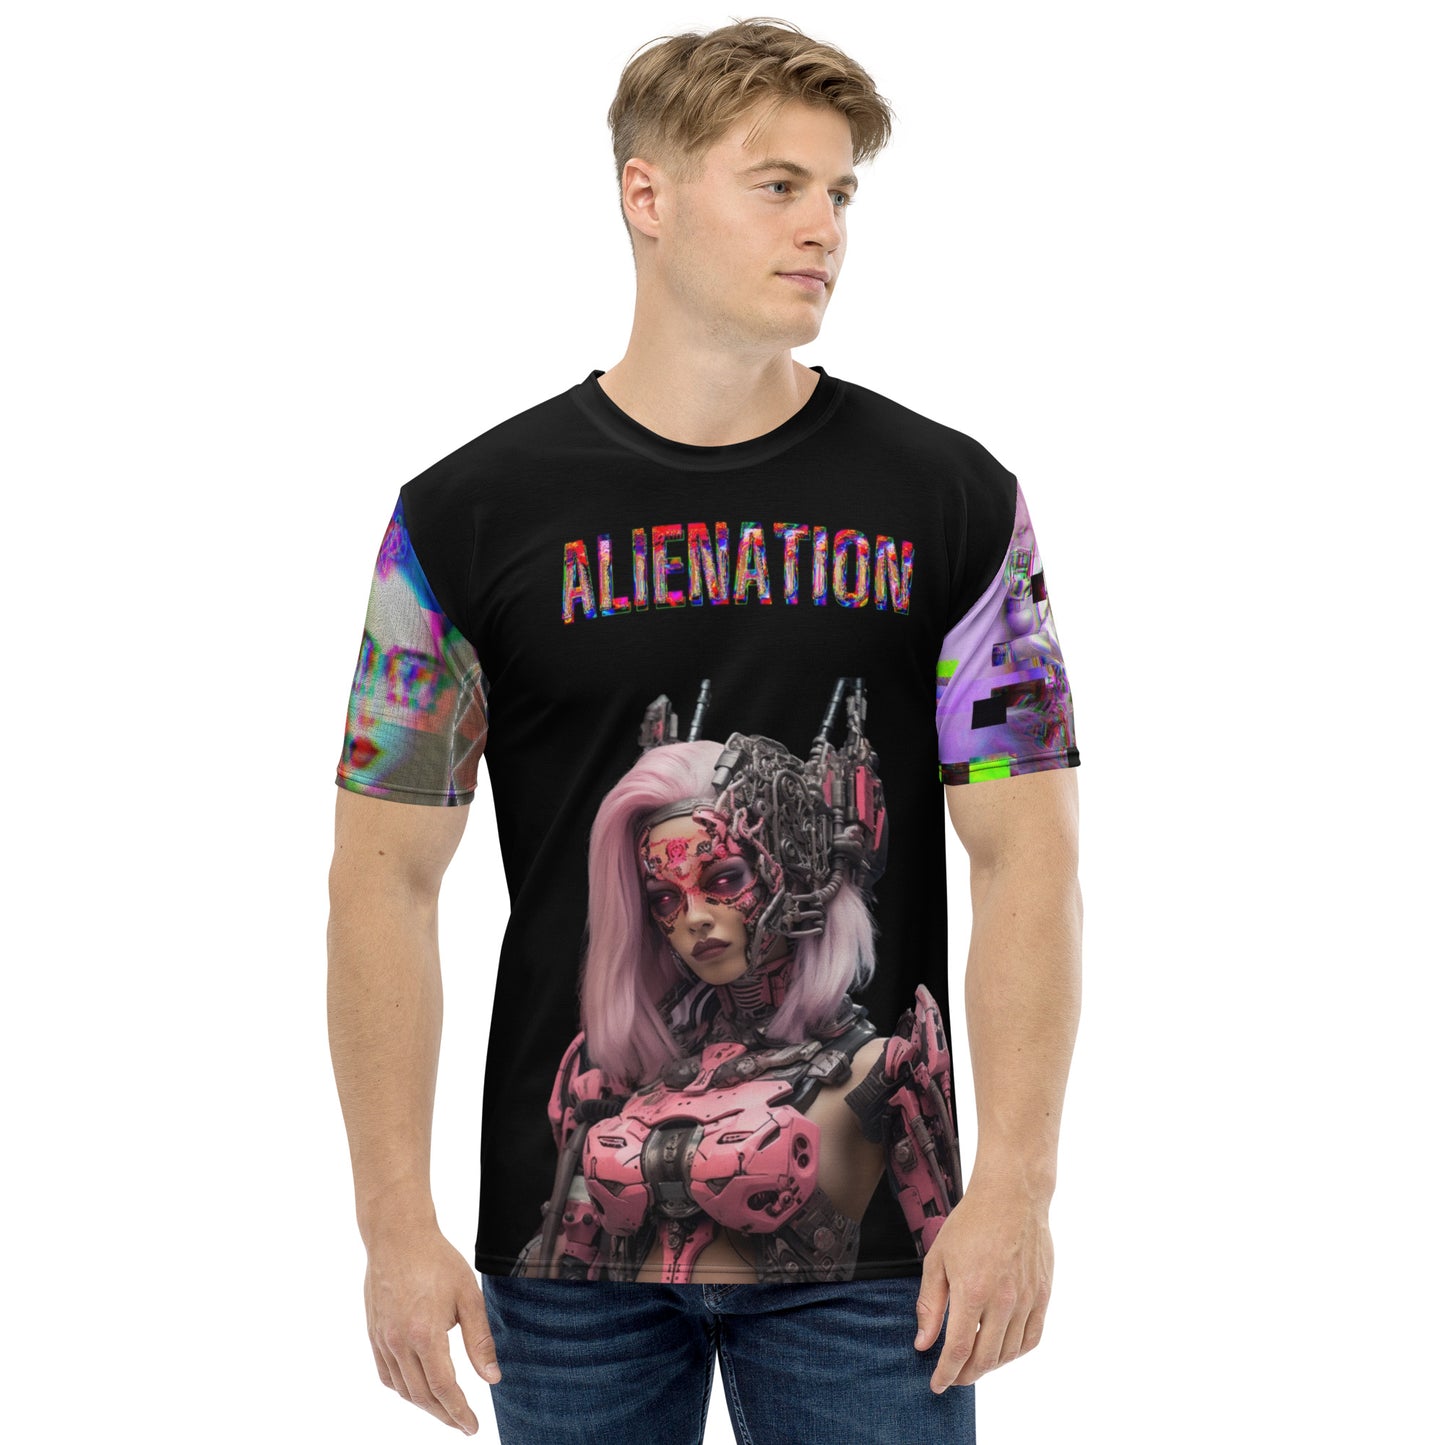 Alienation Men's t-shirt